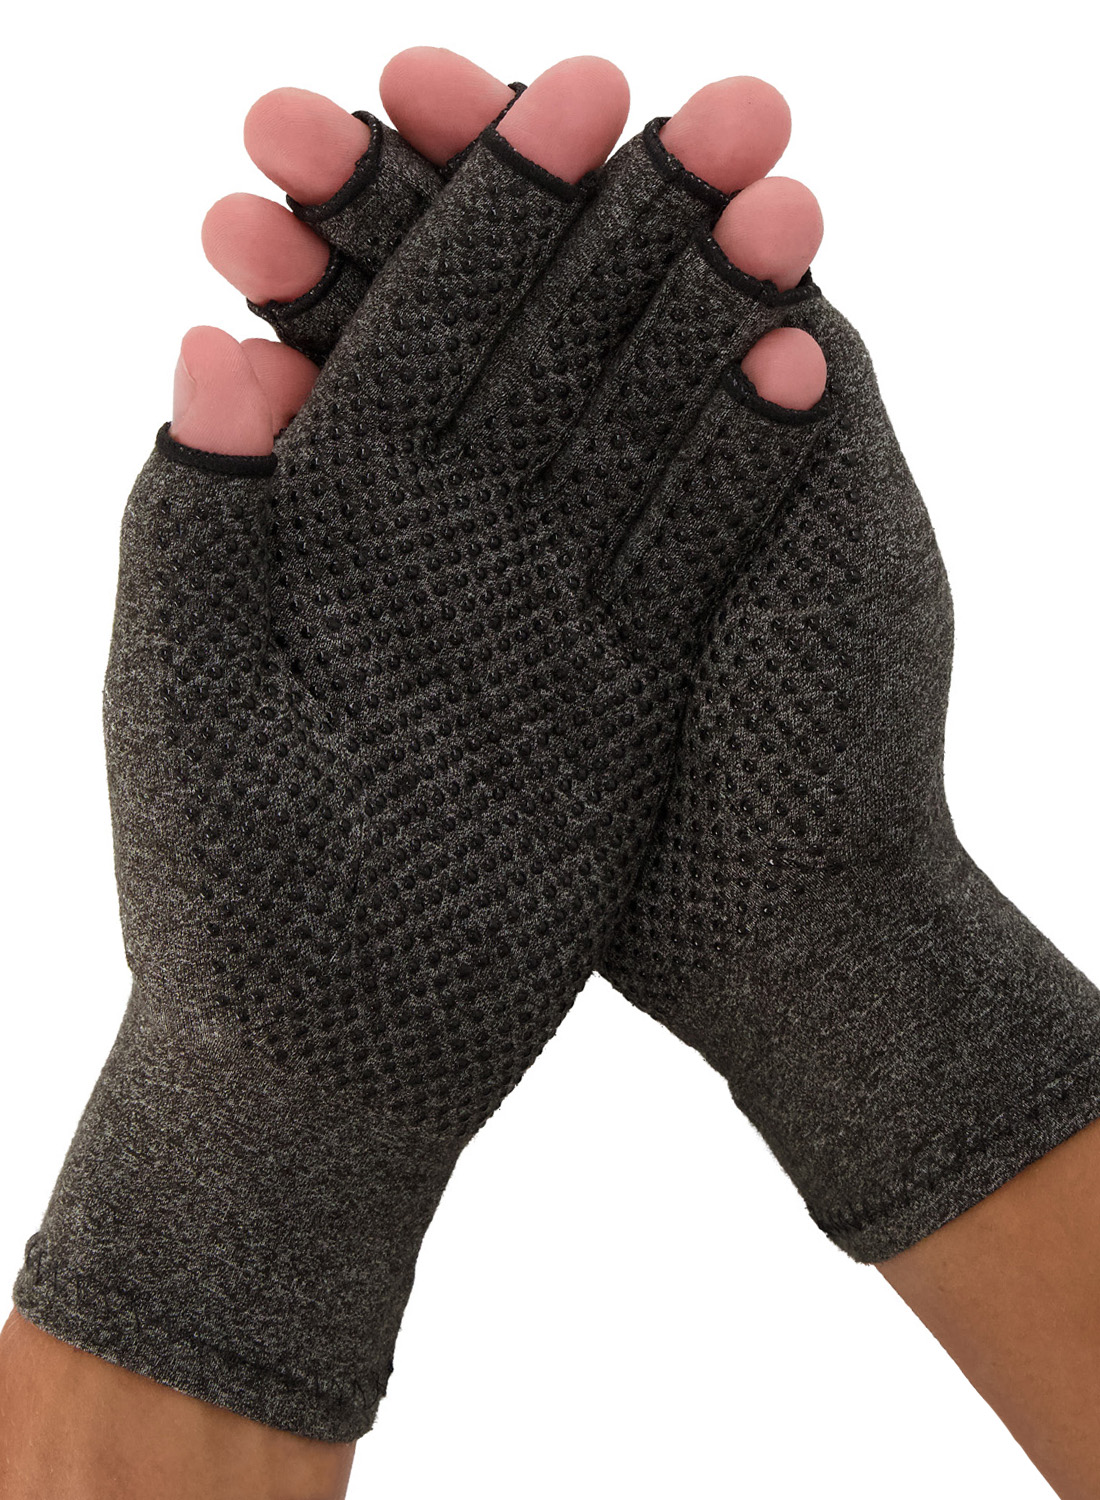 Dunimed artrose reuma handschoenen met antisliplaag